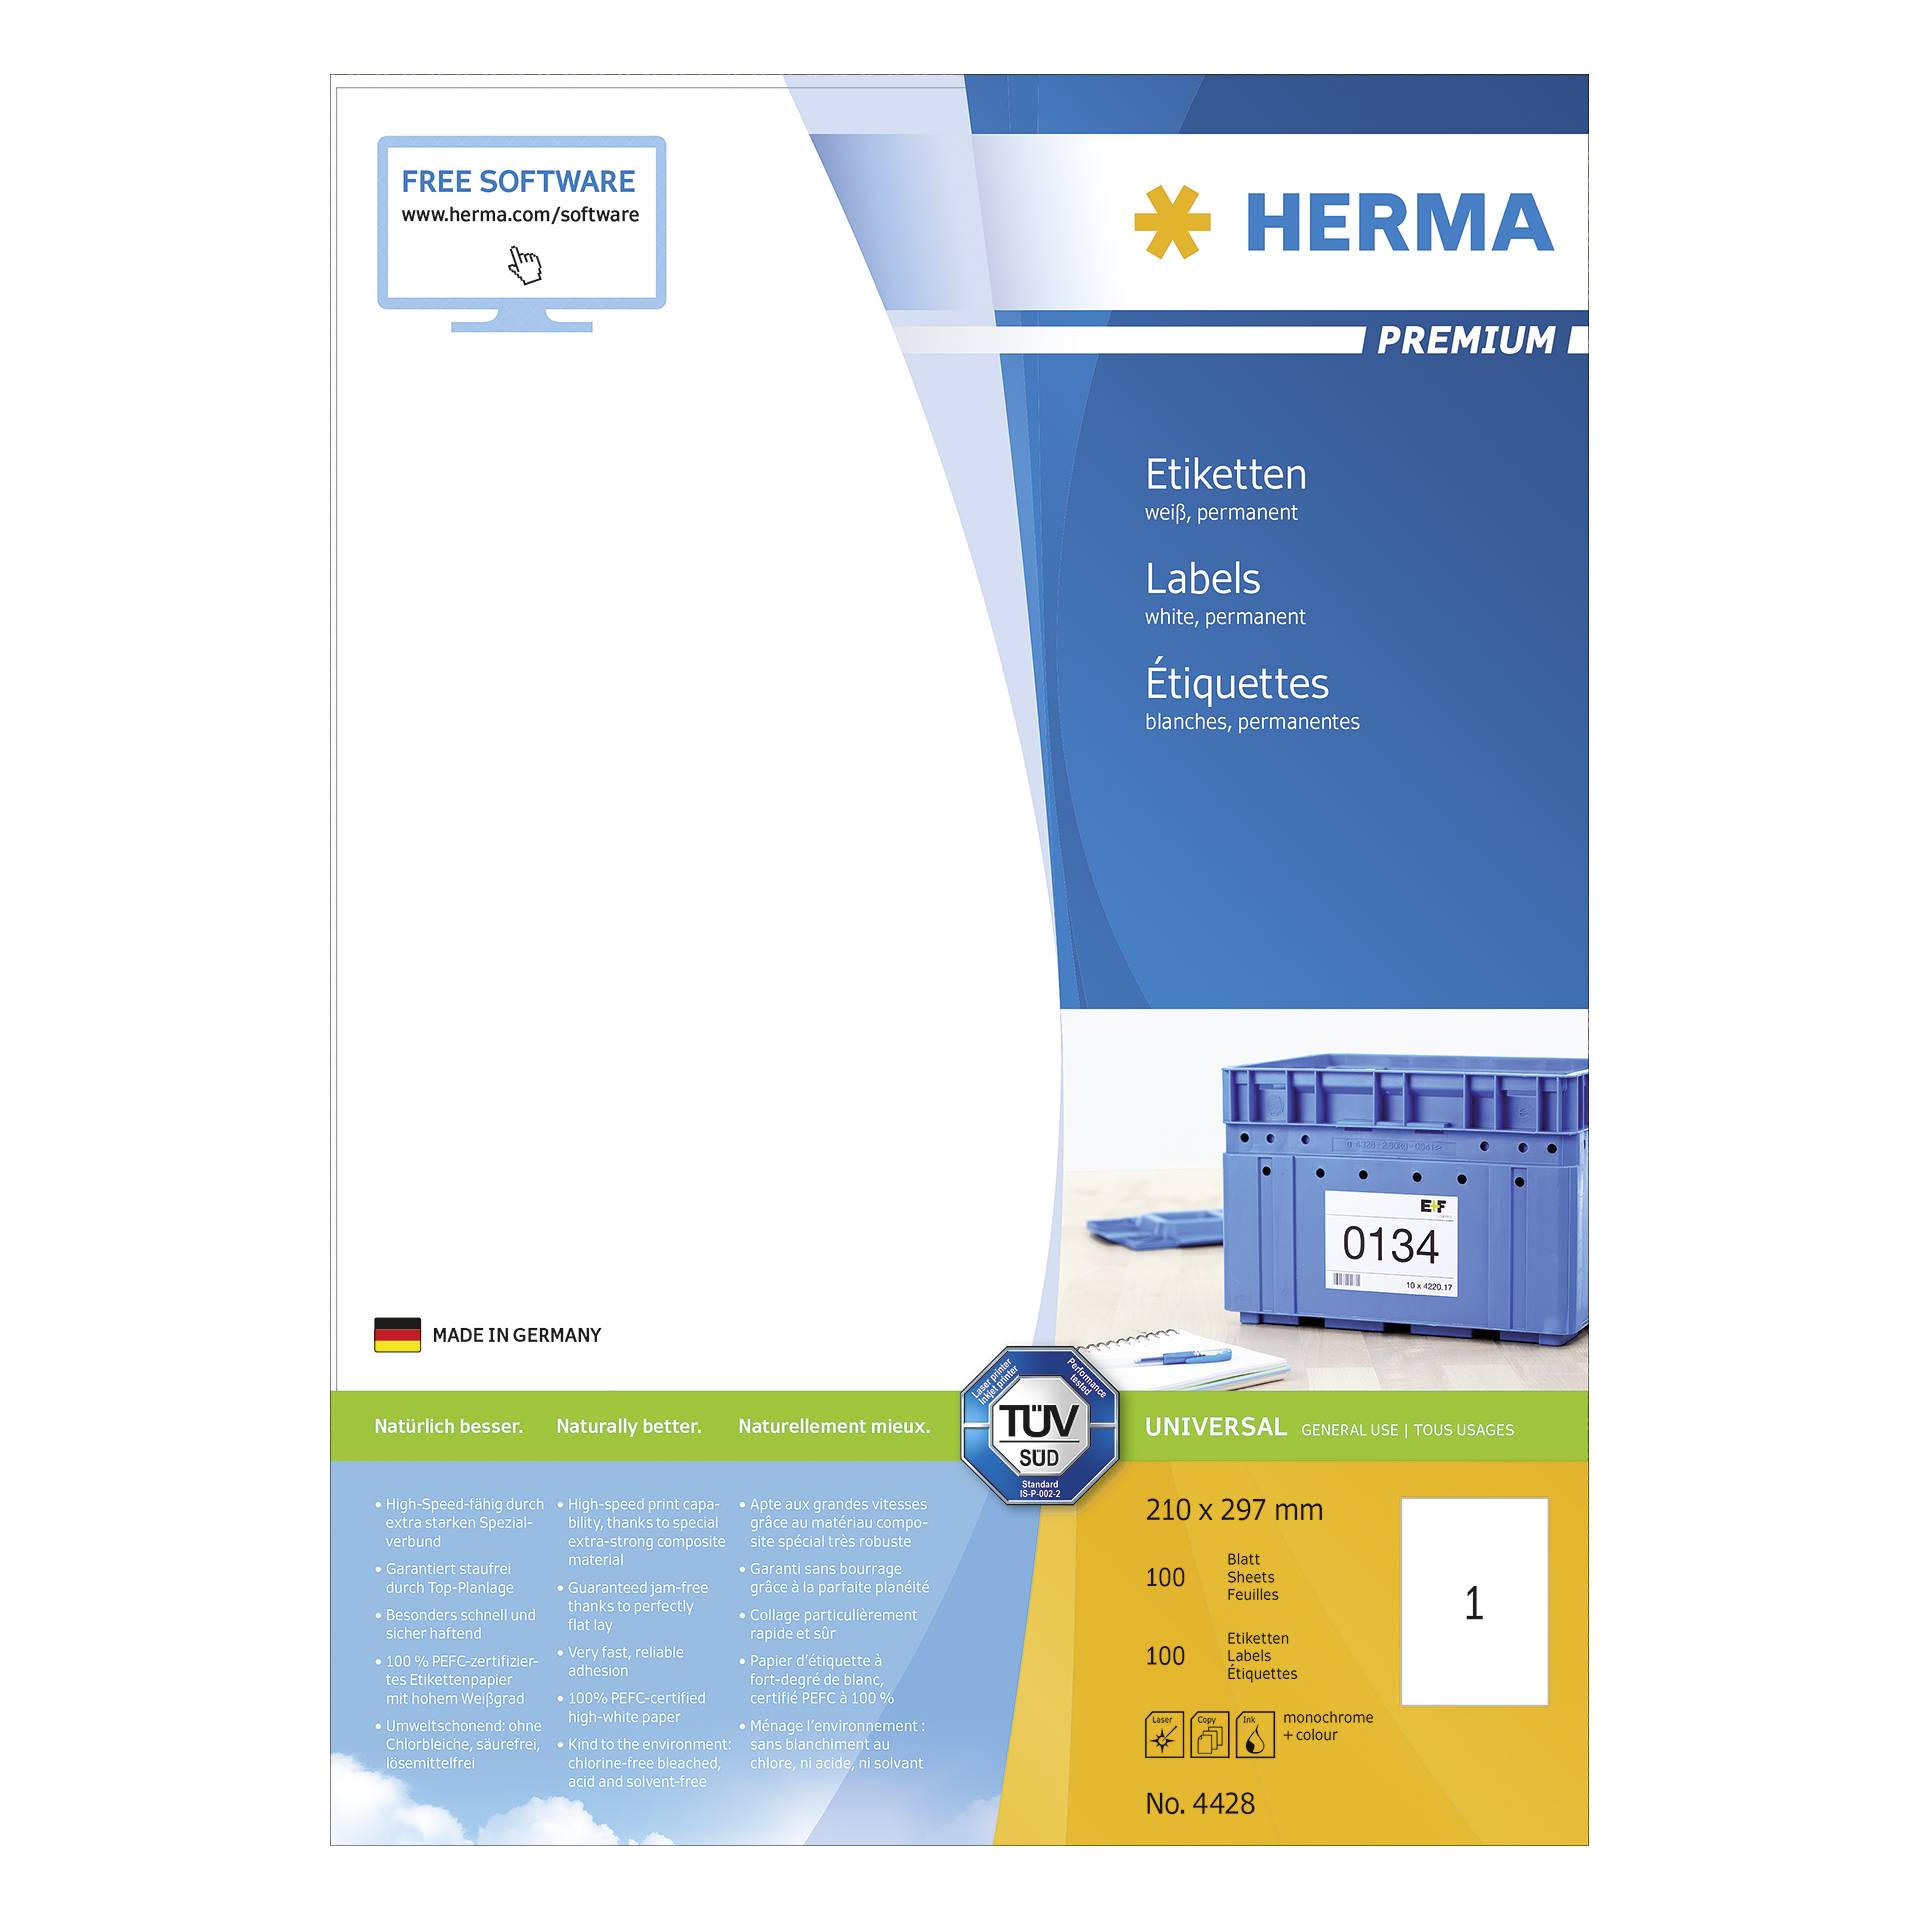 Herma Prem. etichette 210x297 100 p. DIN A4 100 pezzi 4428